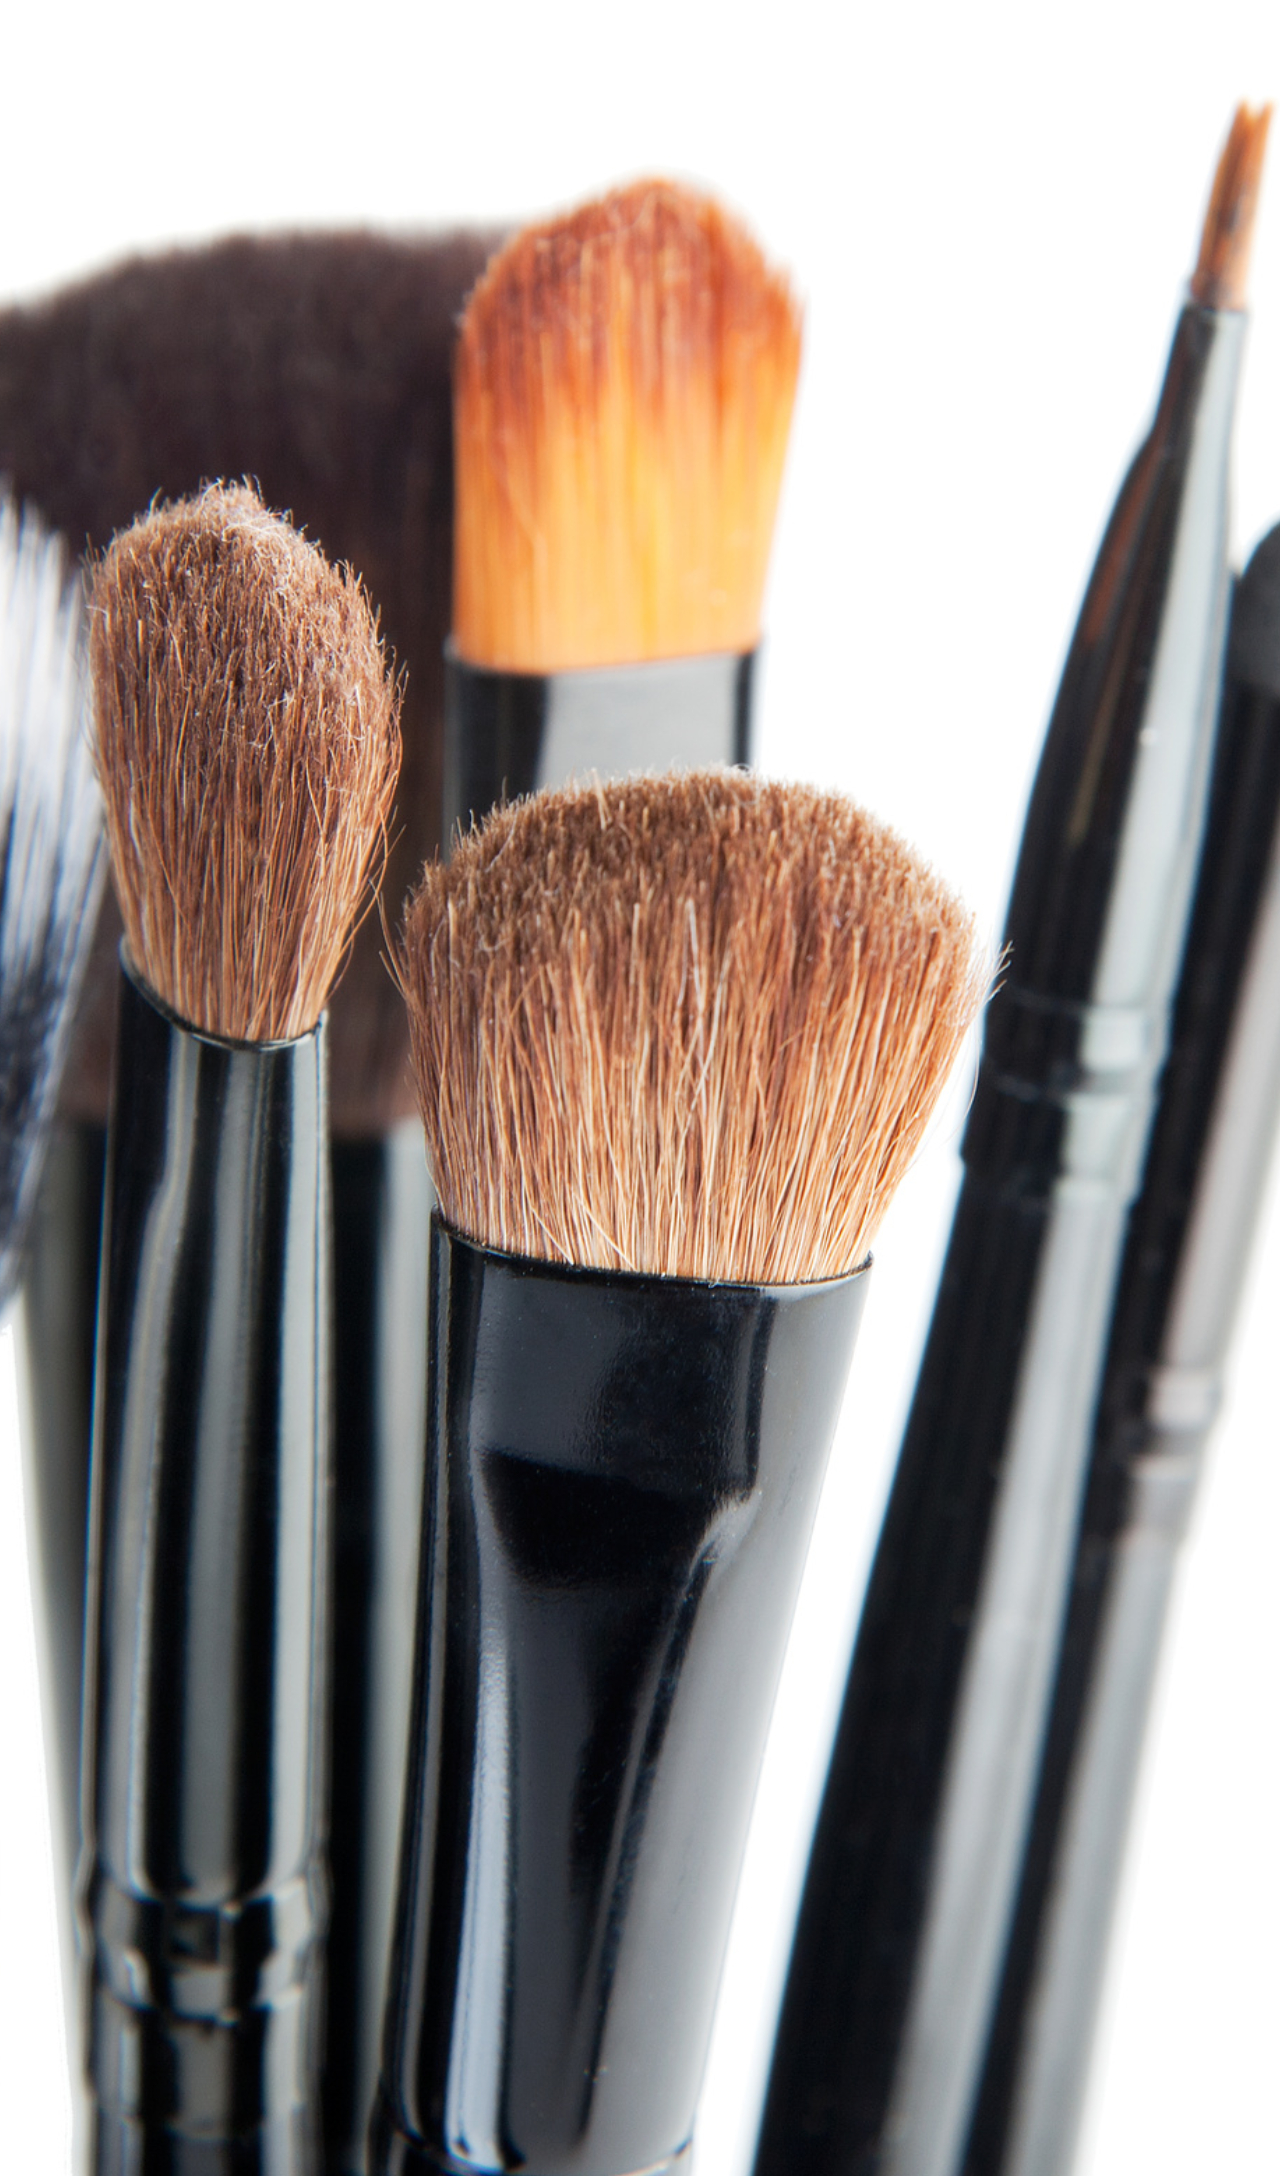 Cómo Limpiar las Brochas de Maquillaje Después de Su Uso